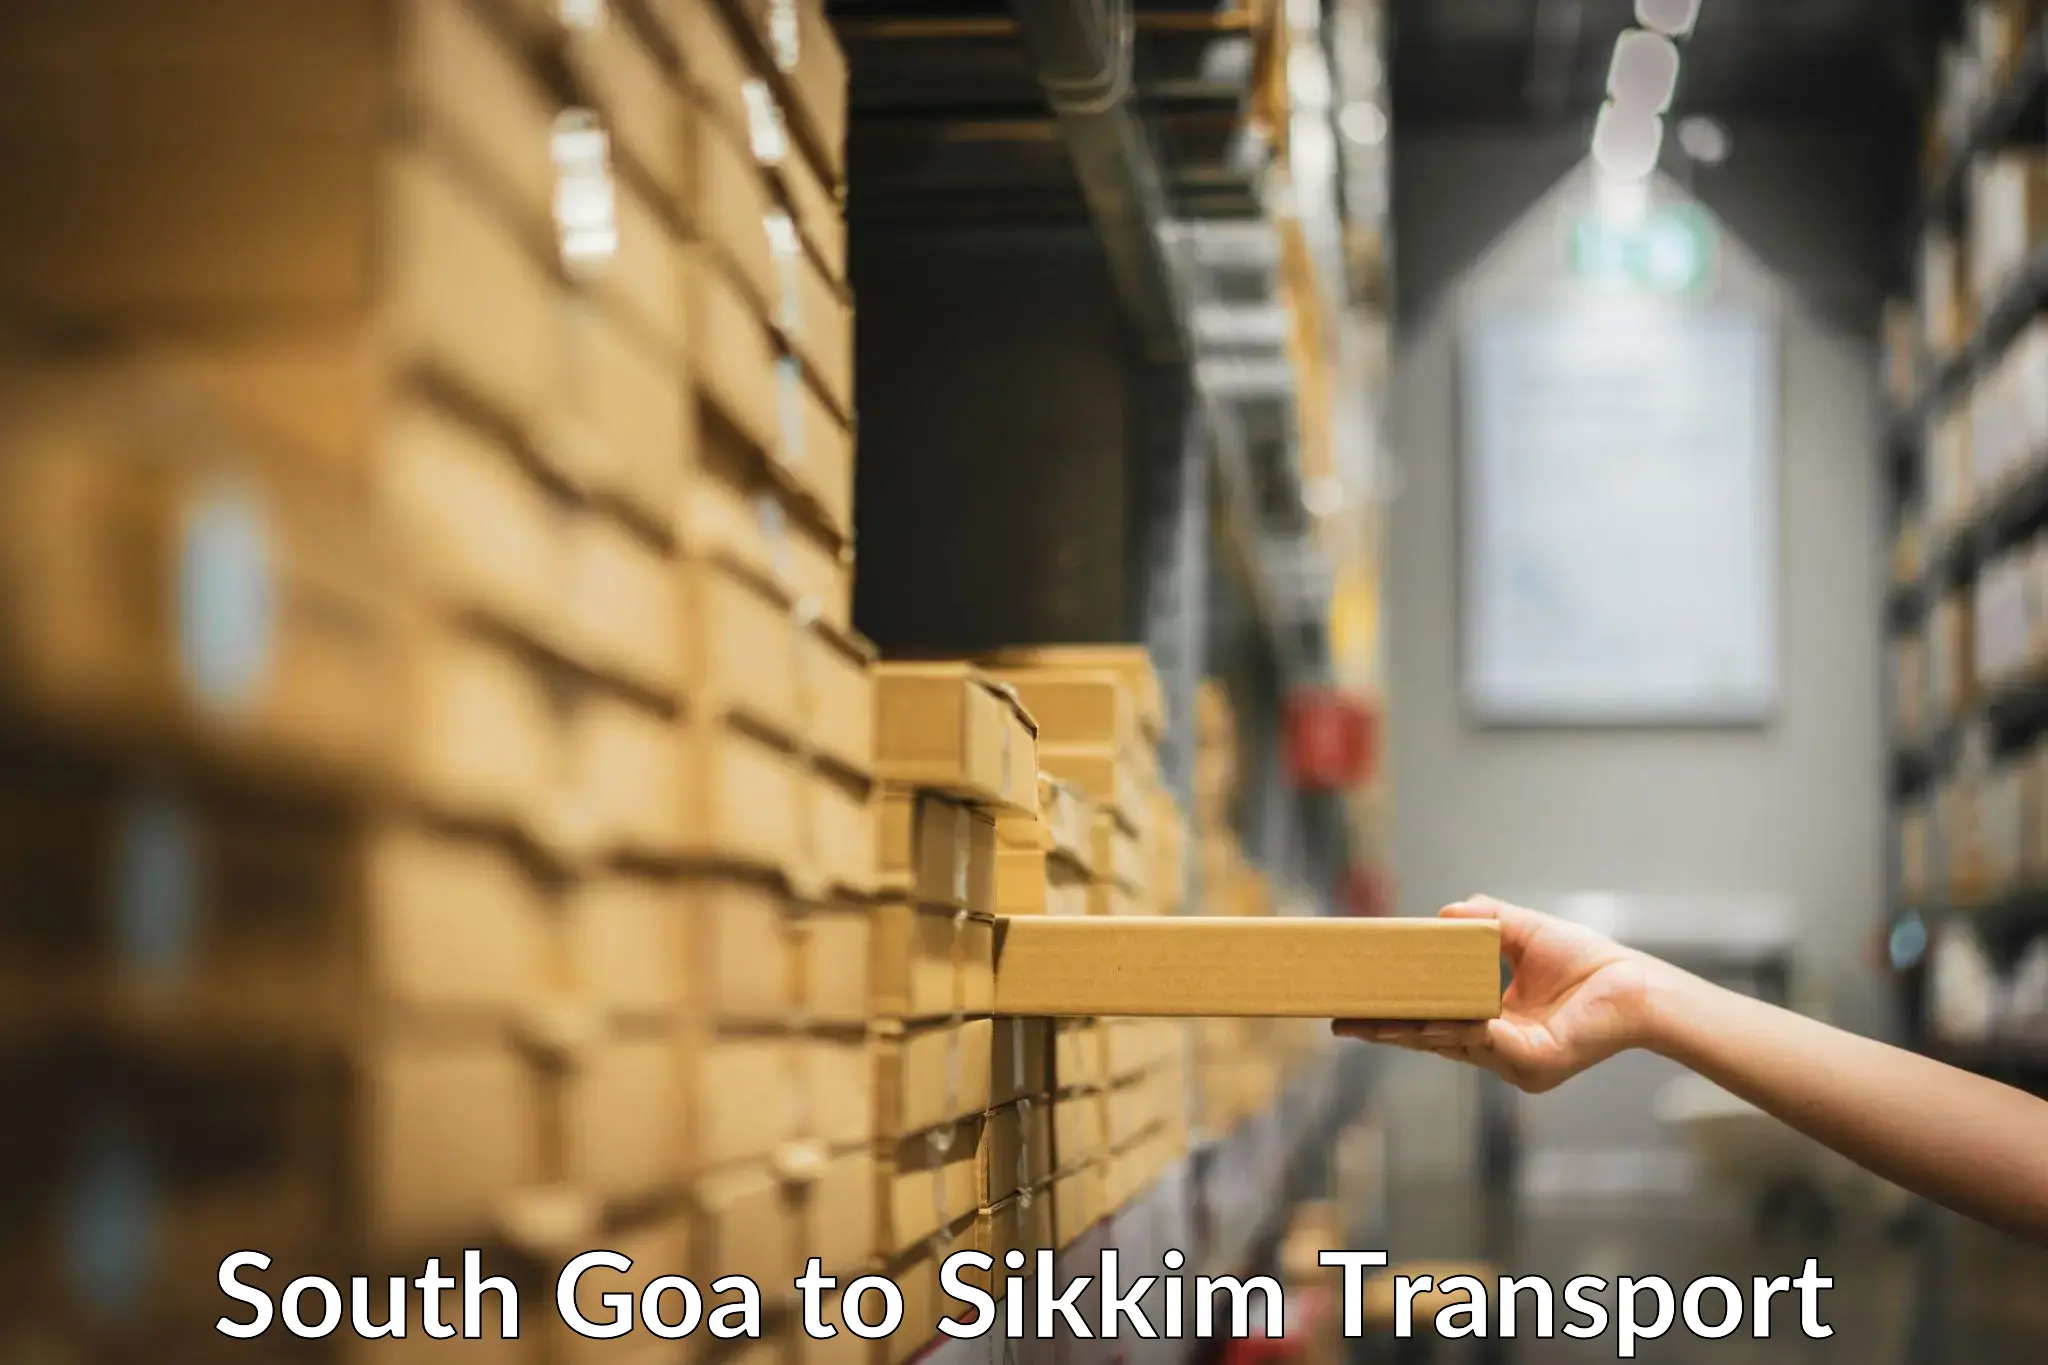 Cargo train transport services South Goa to Singtam